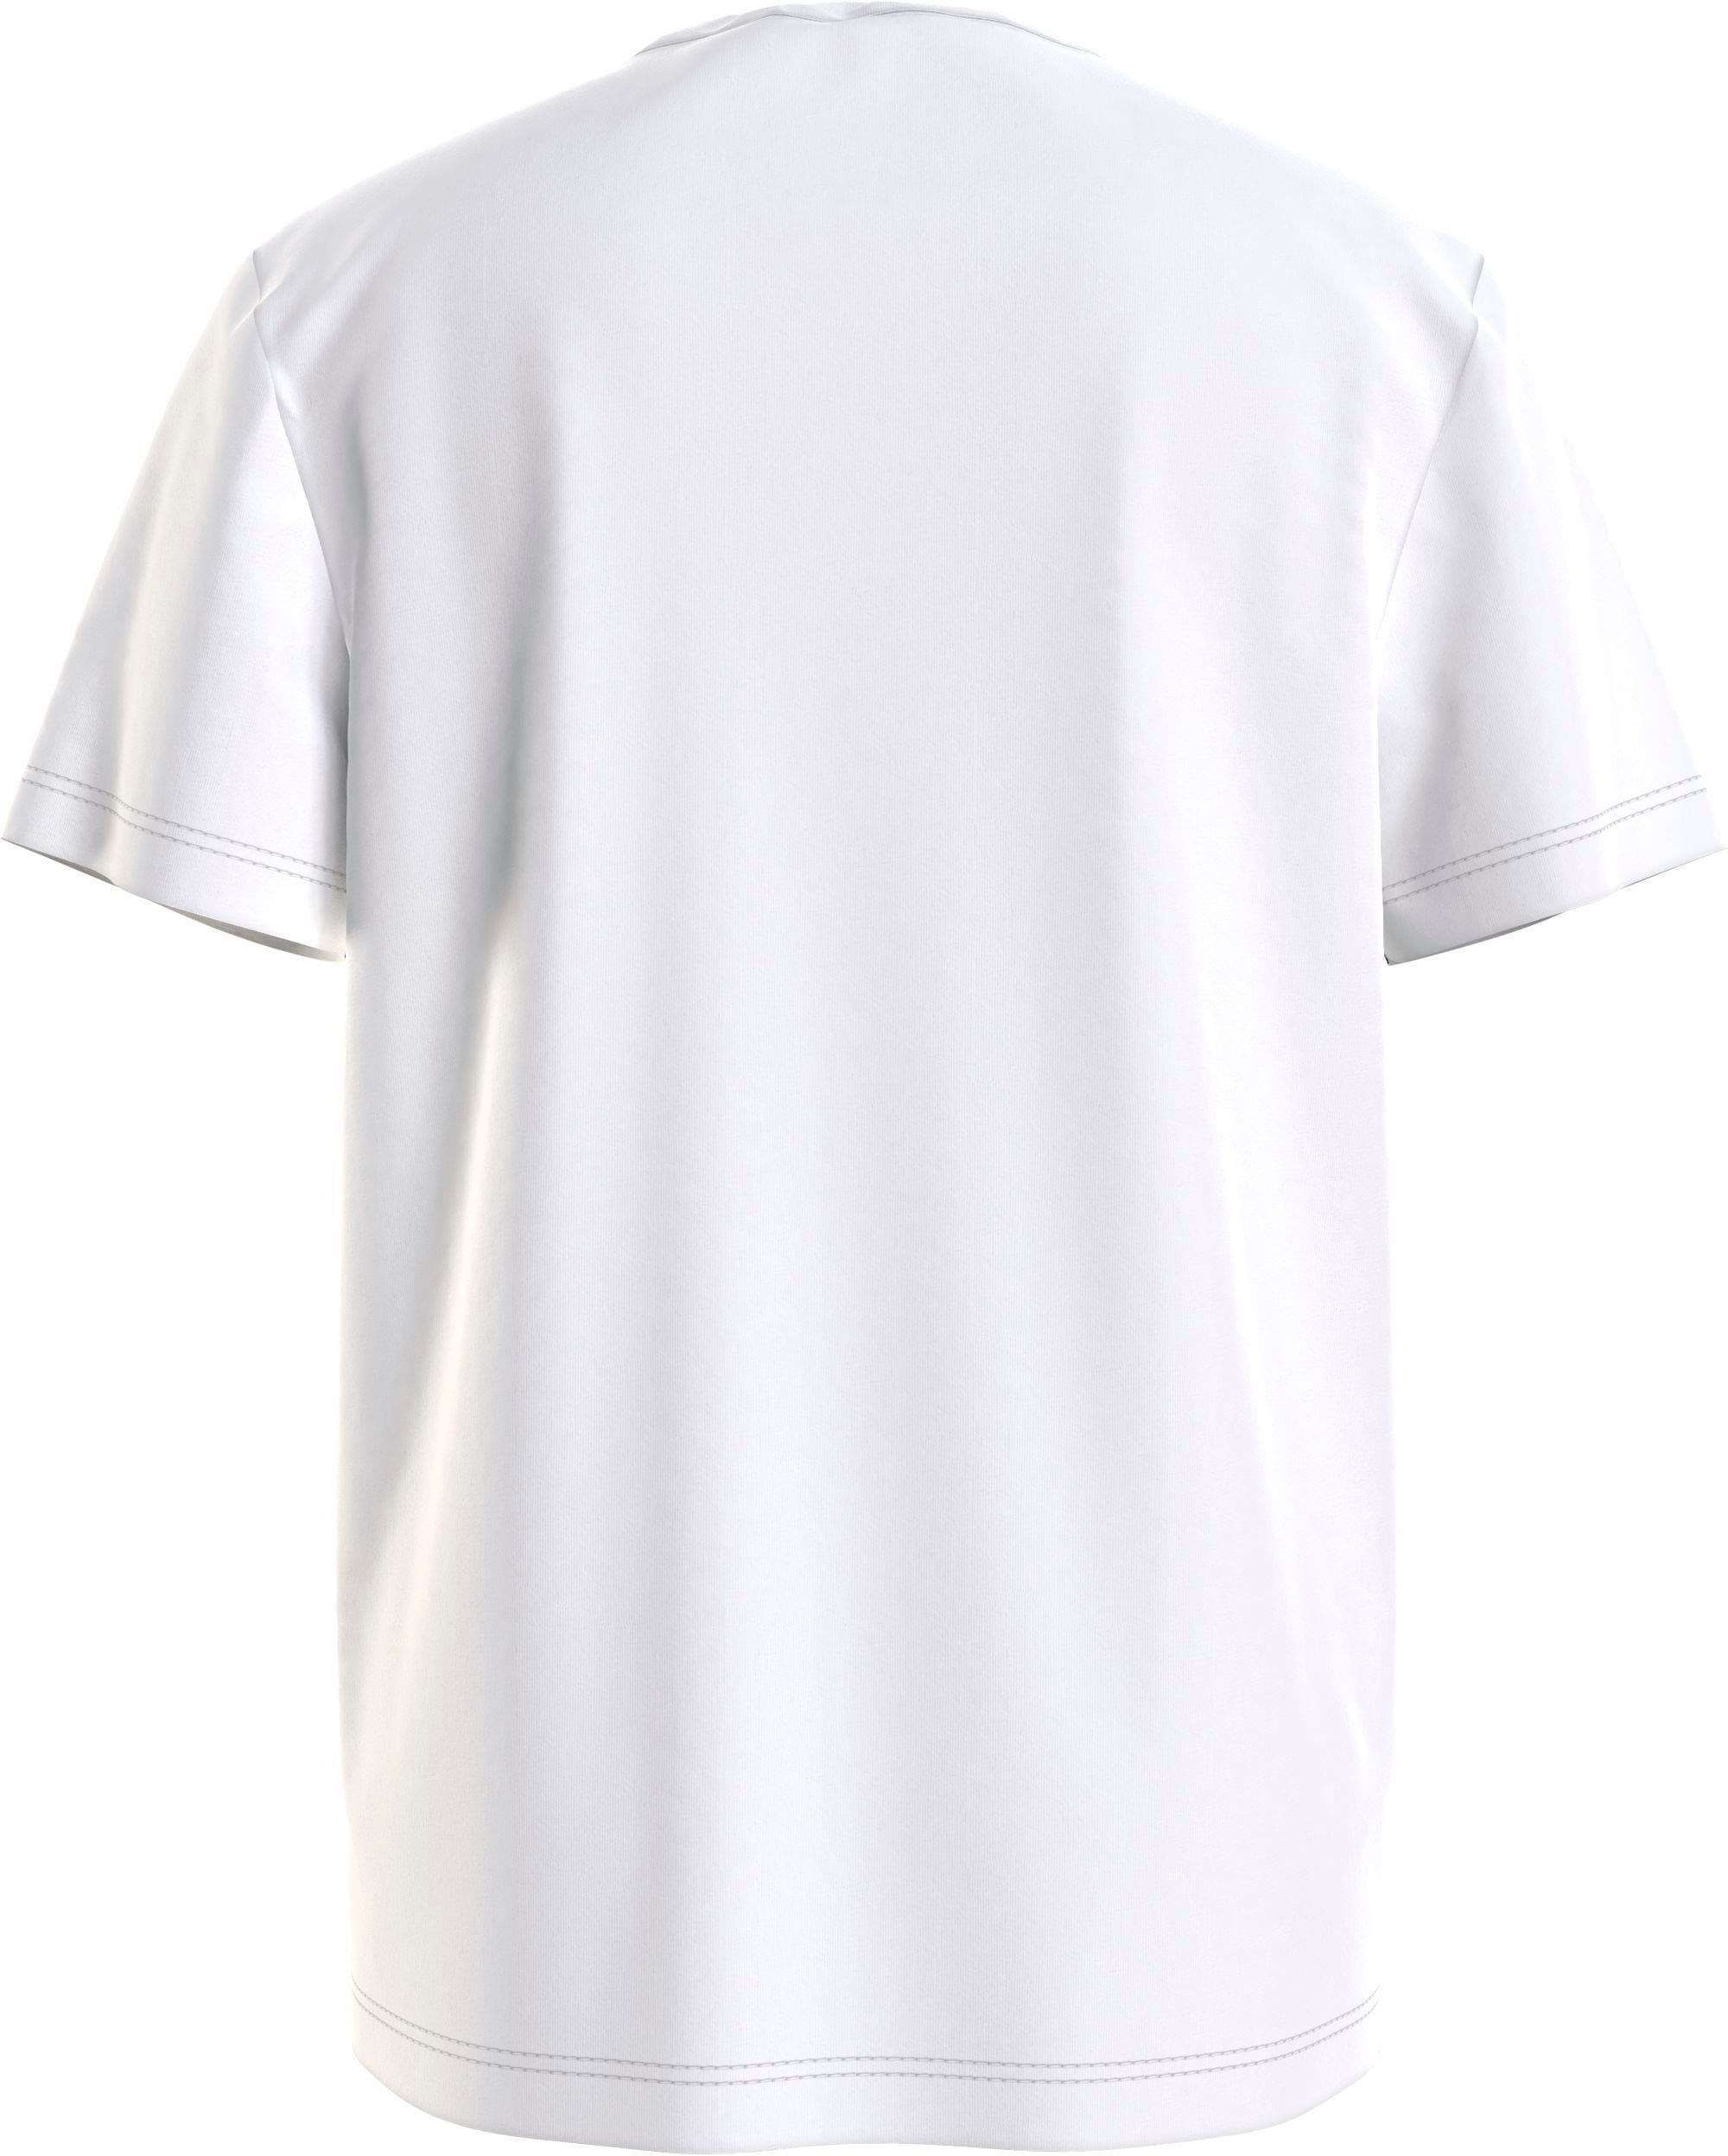 Calvin Klein Jeans T-Shirt »MONOGRAM LOGO T-SHIRT«, Kinder Kids Junior  MiniMe,für Mädchen und Jungen kaufen